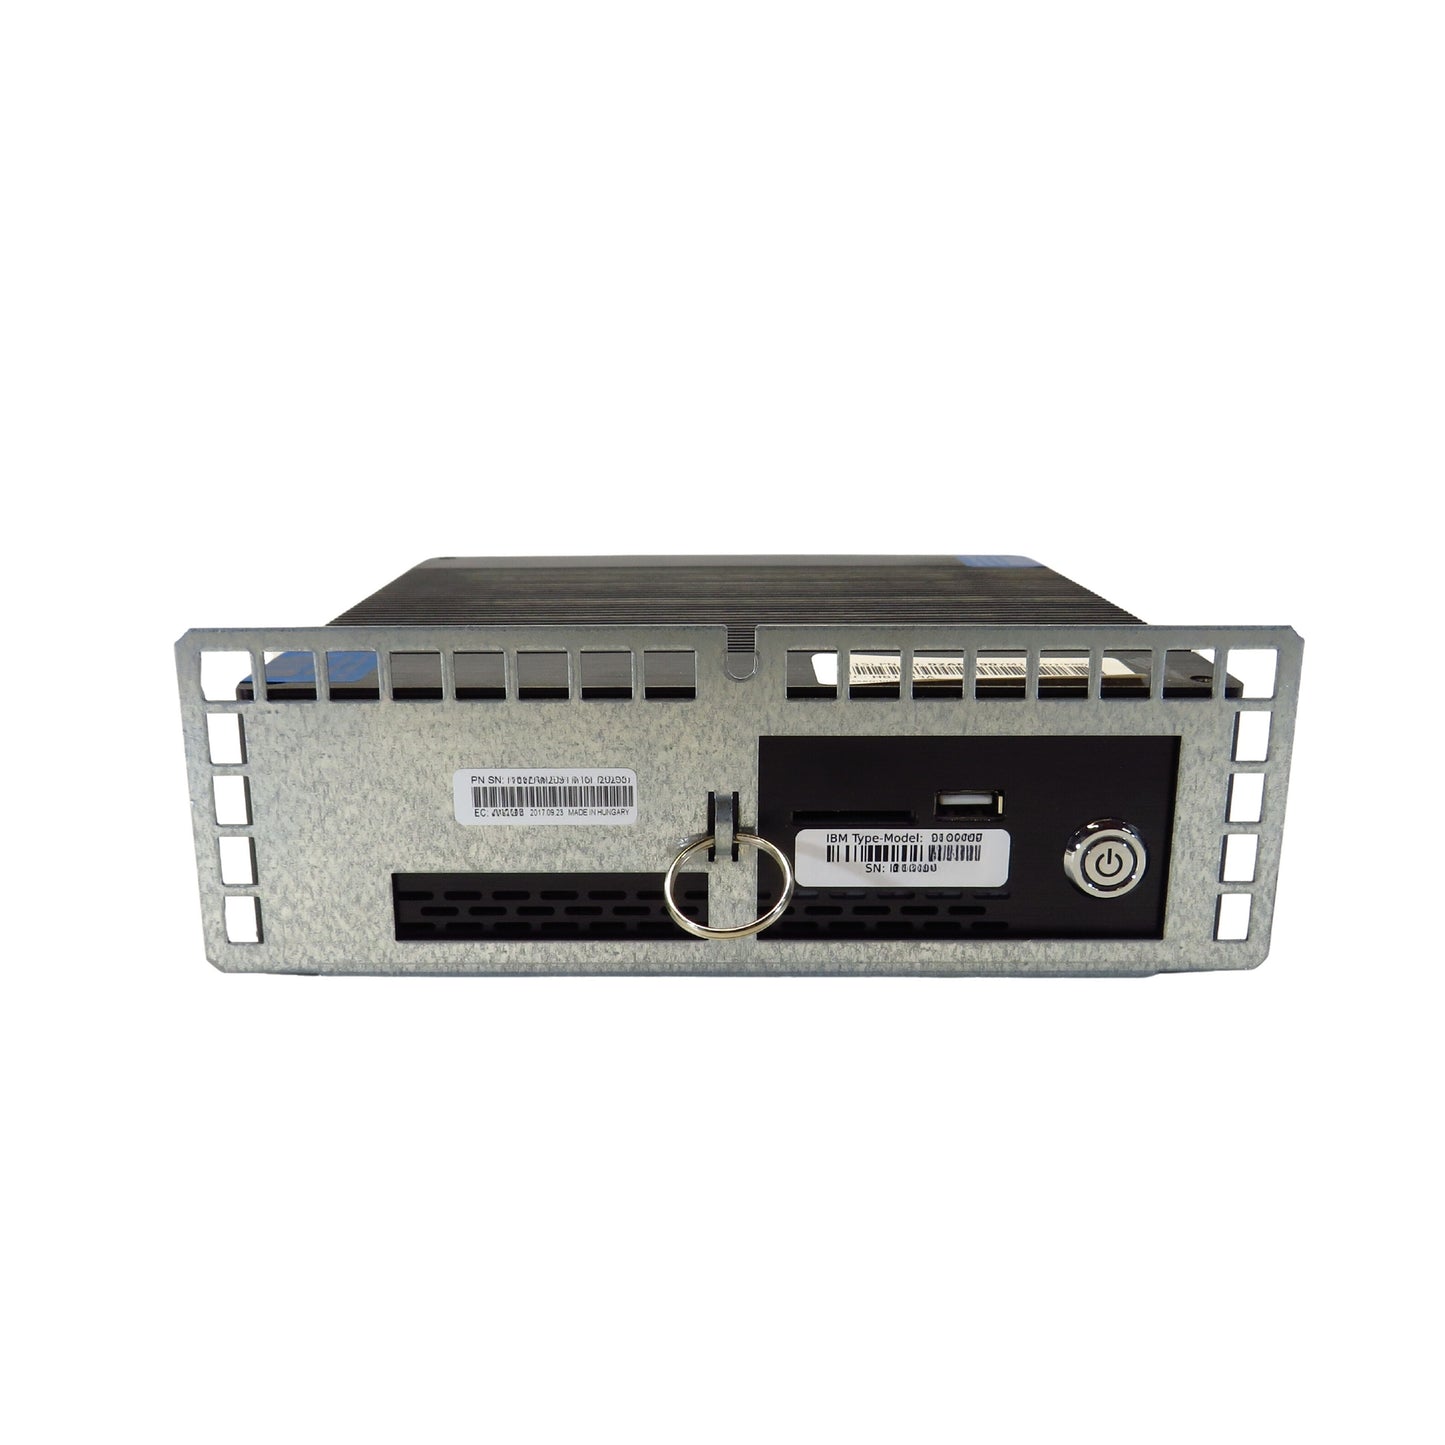 IBM DS8000 983, 99x SFF Hardware Management Console HMC (Gen1) (Refurbished)